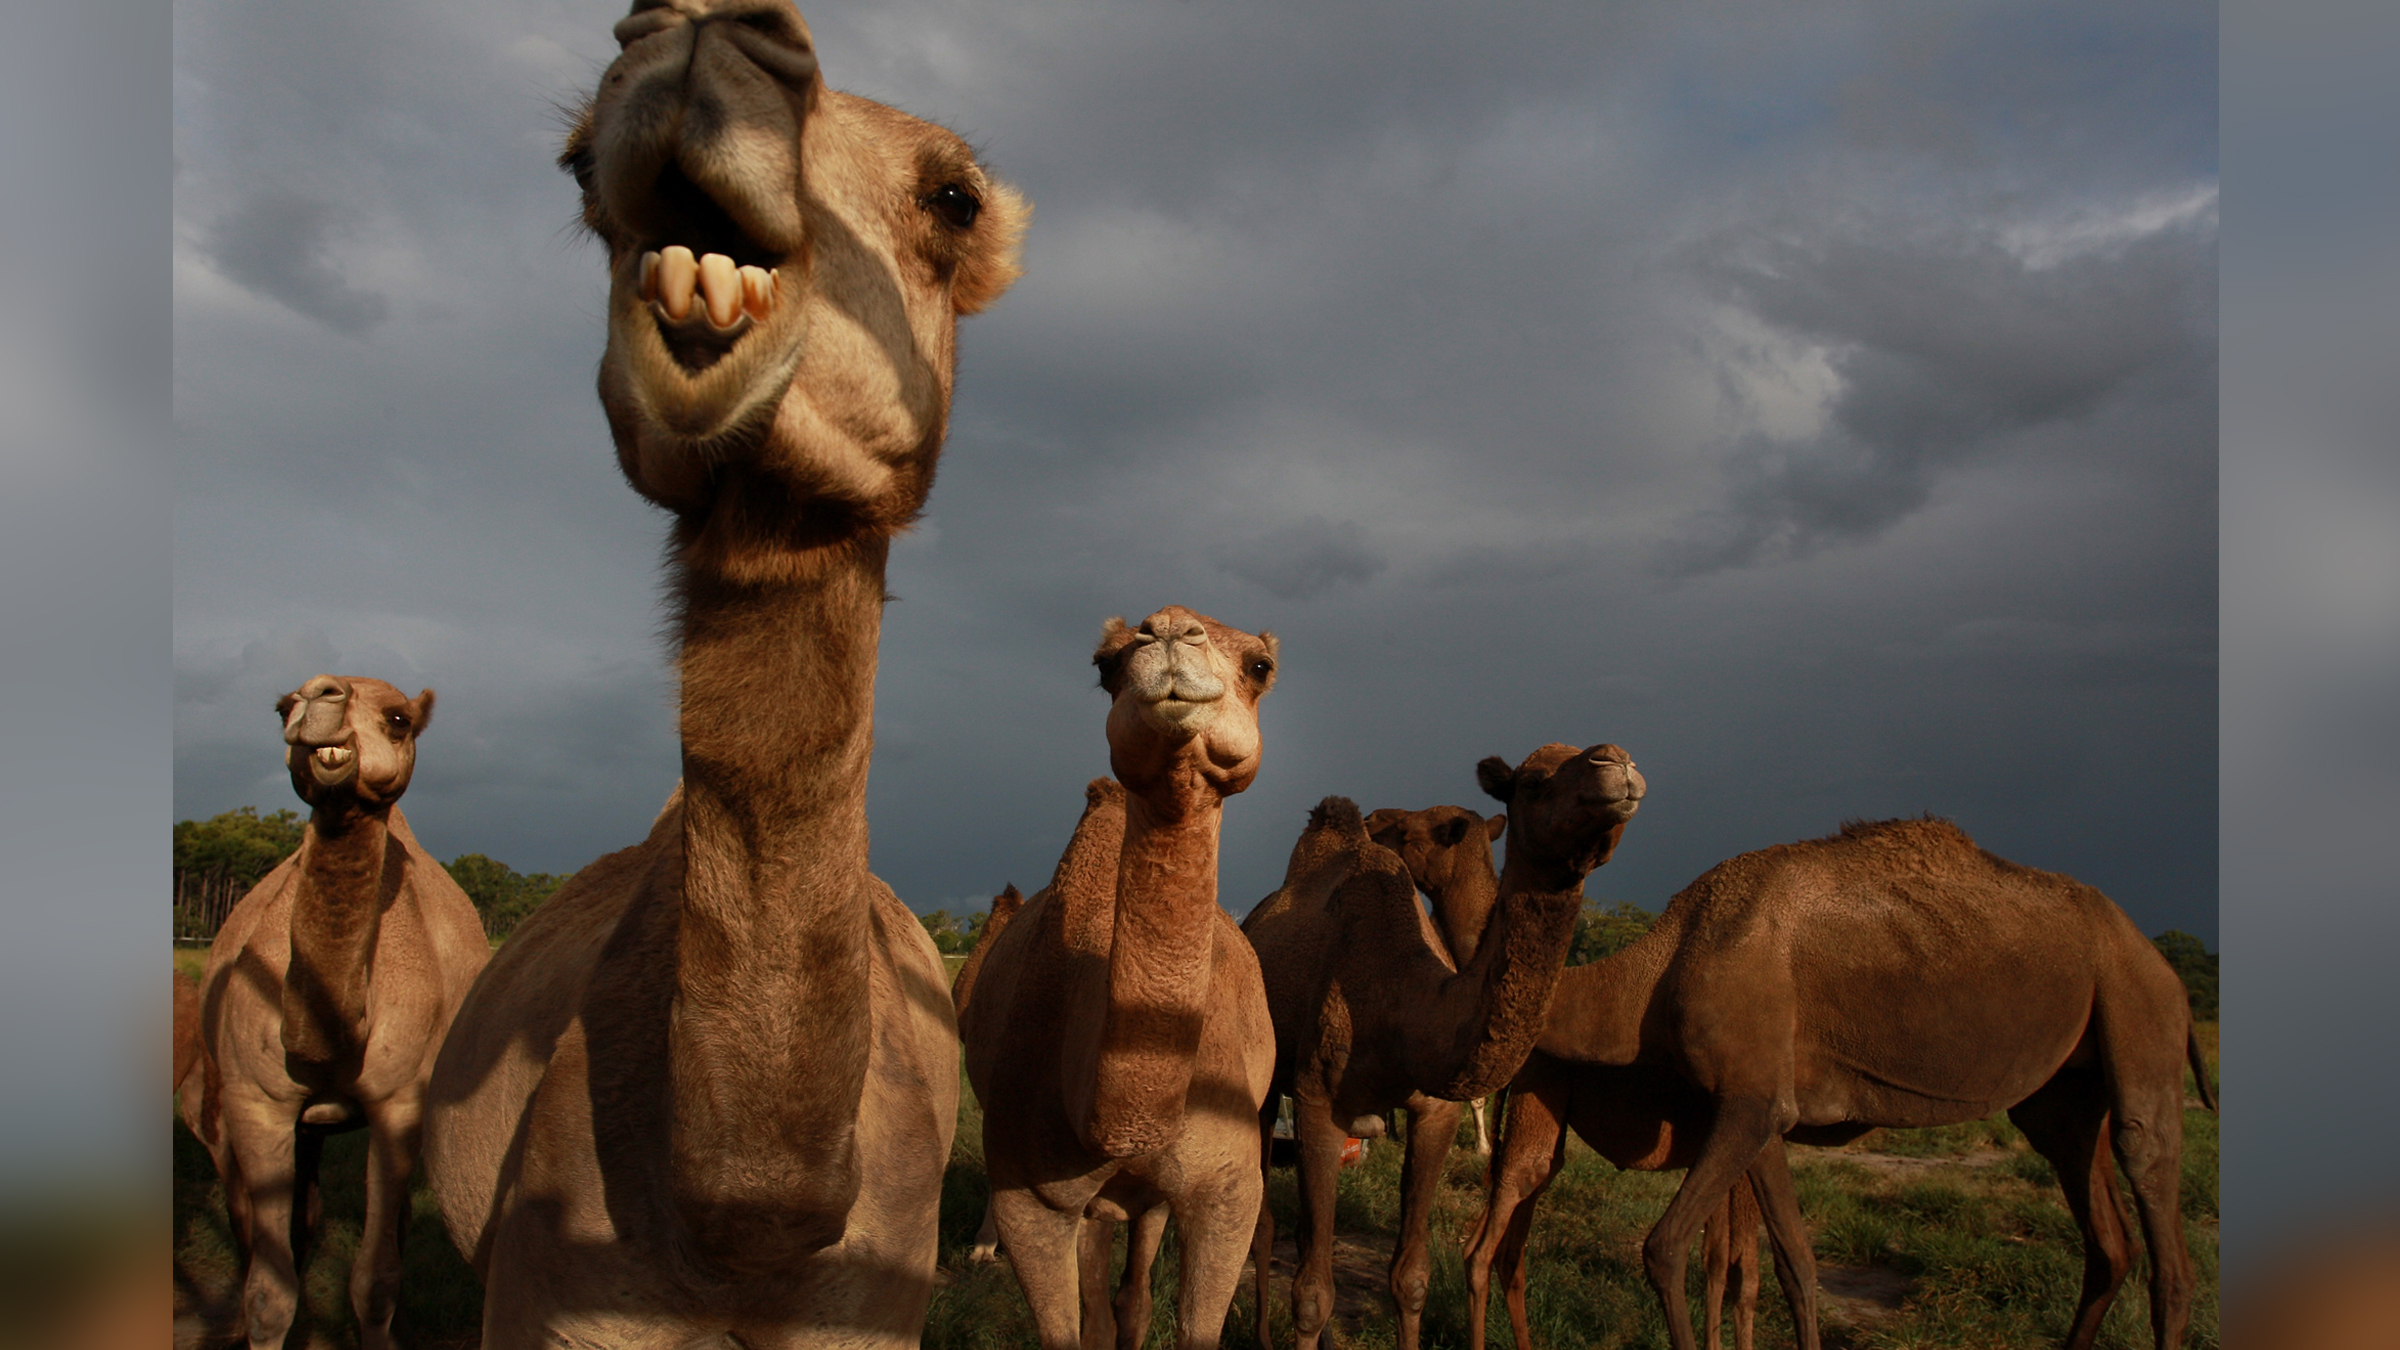 Kamele sind auf einer australischen Kamelmilchfarm abgebildet.